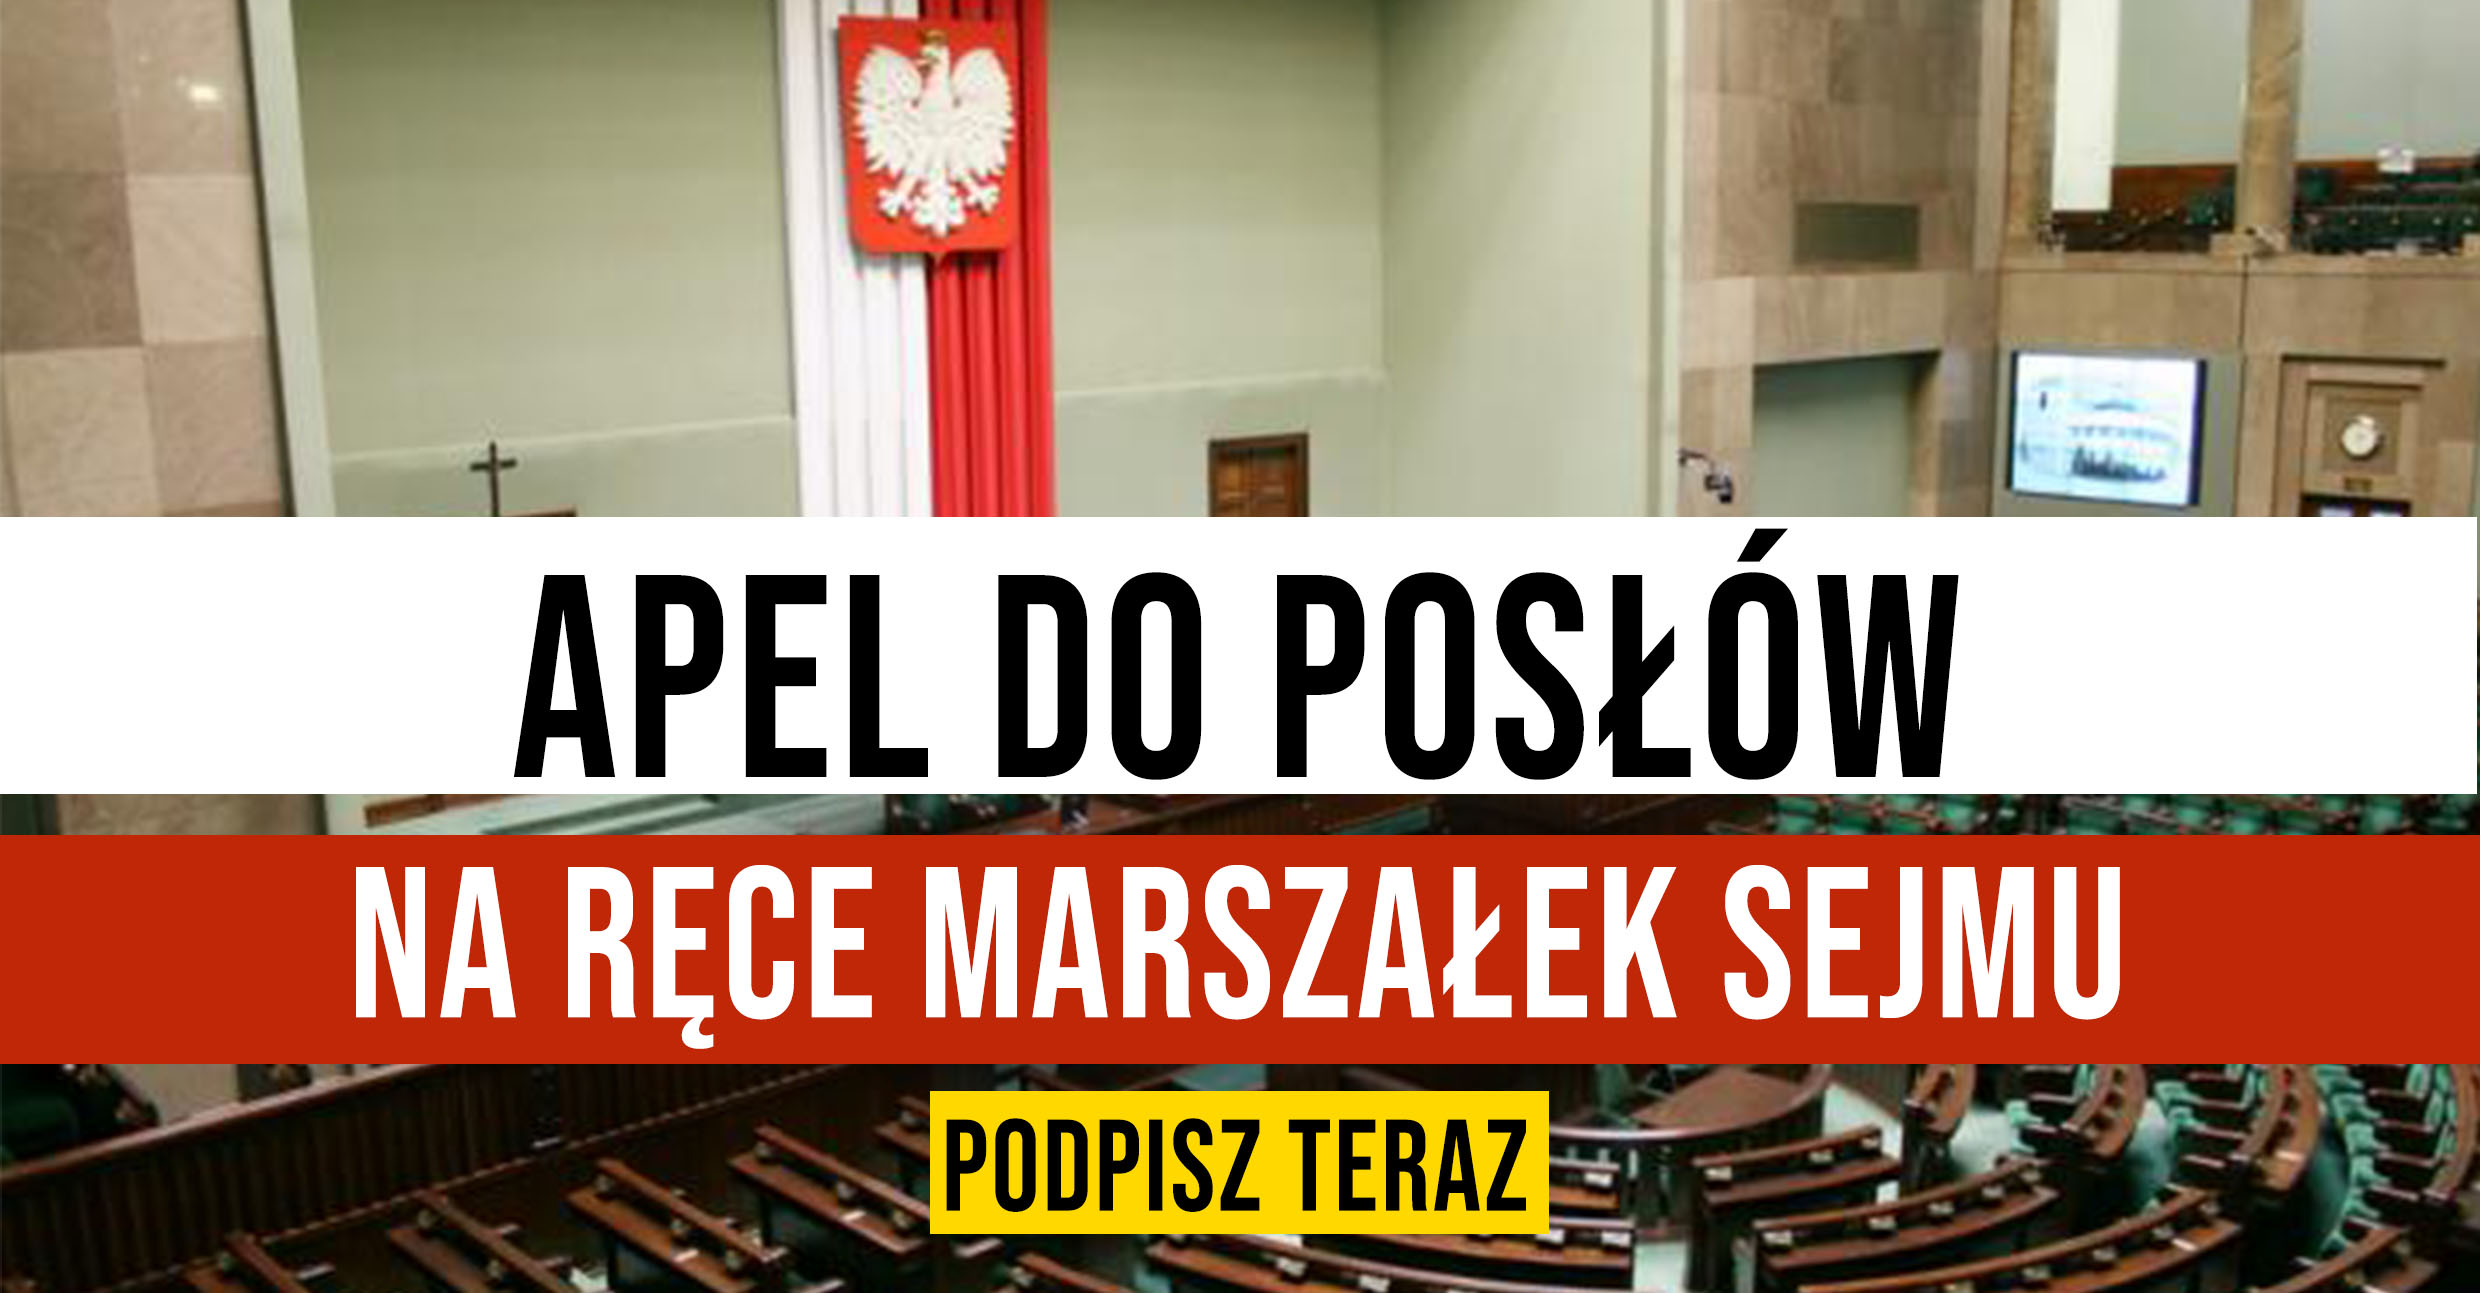 PILNY Apel do Posłów na ręce Marszałek Sejmu